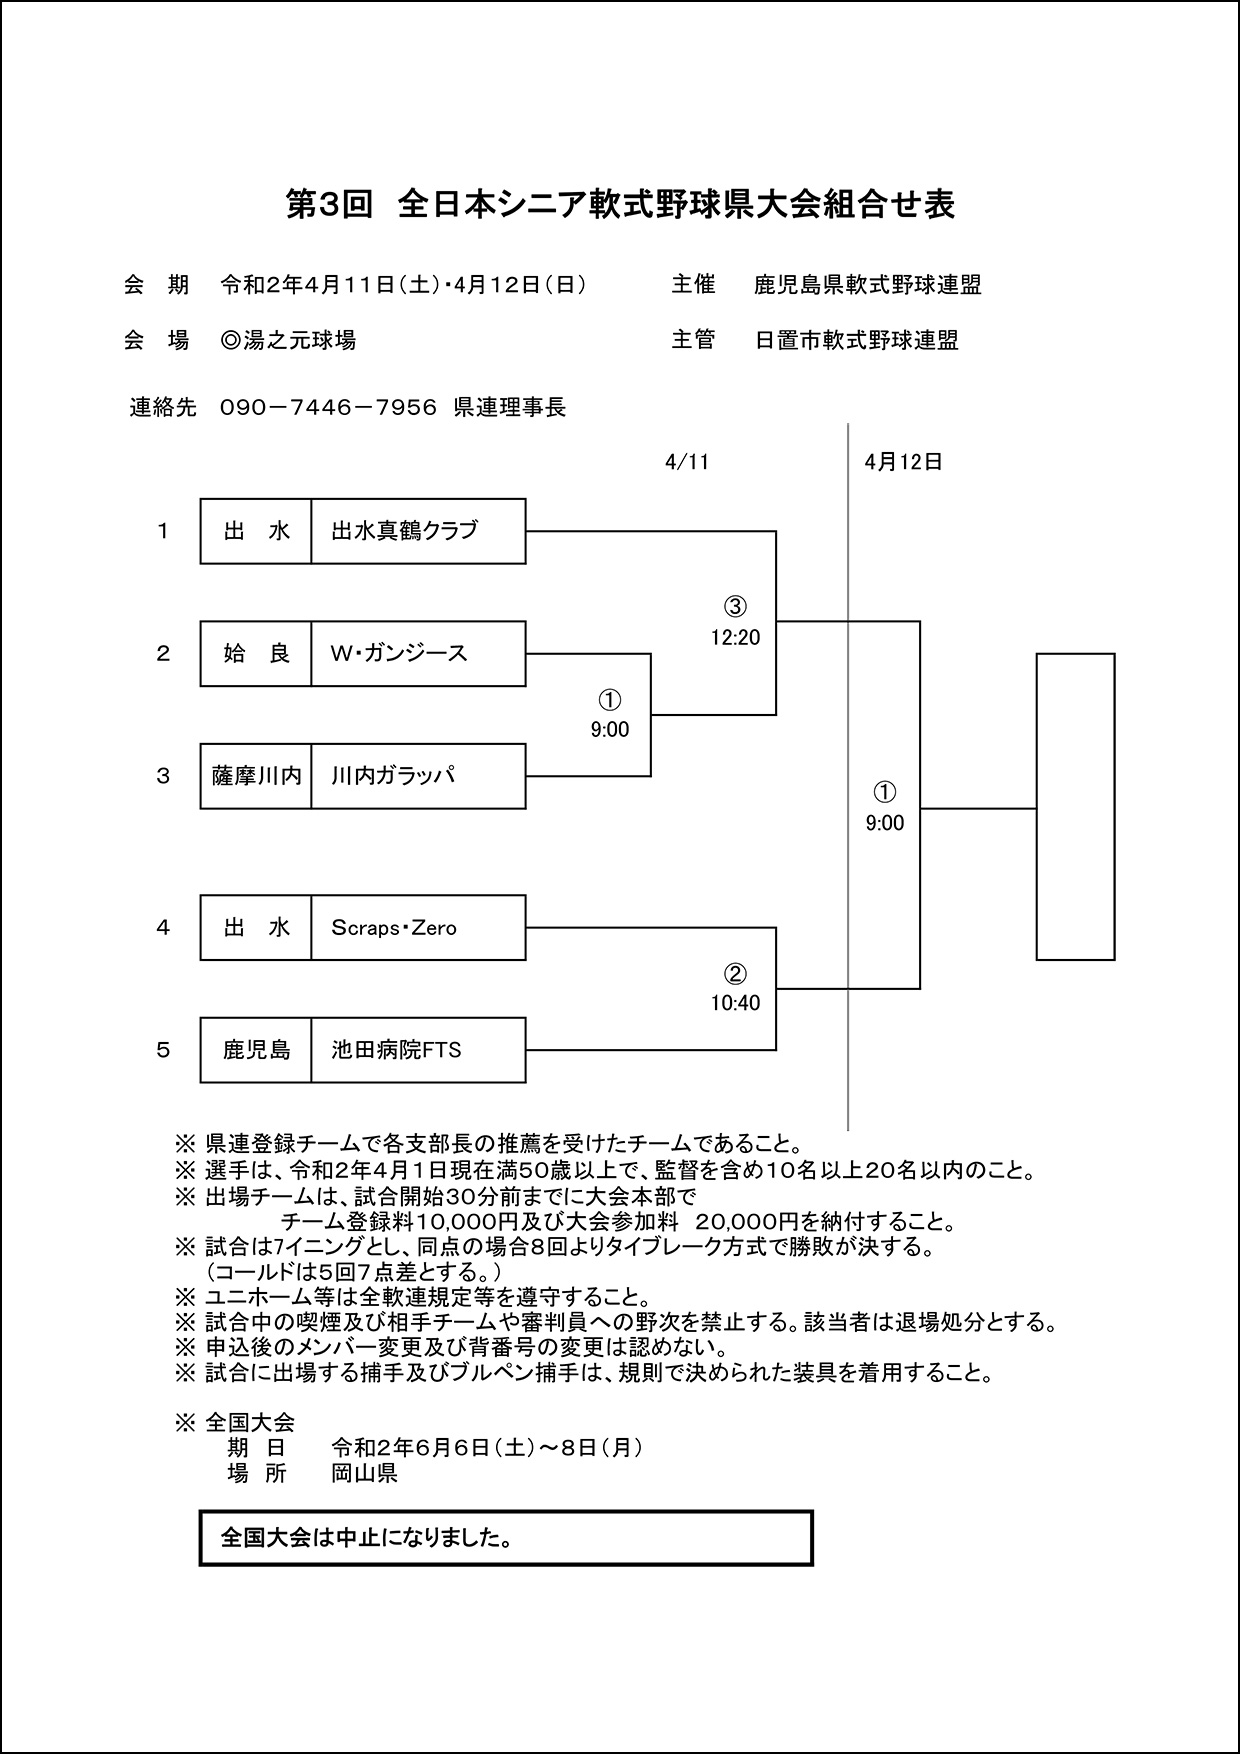 【組合せ】第3回全日本シニア軟式野球県大会